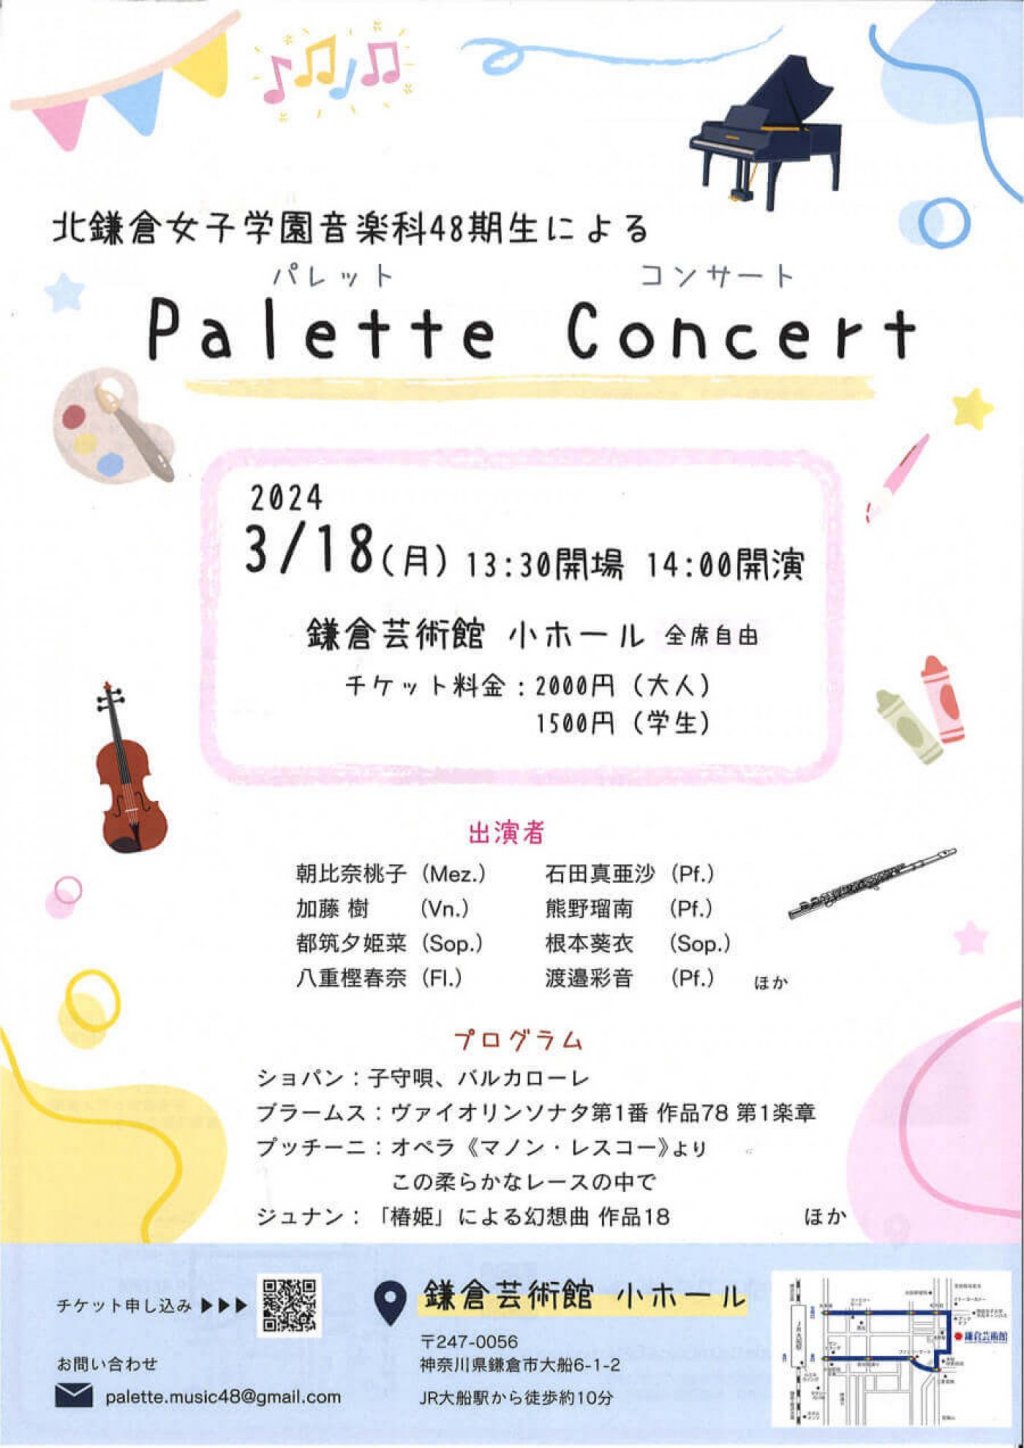 北鎌倉女子学園音楽科48期生による Palette Concert